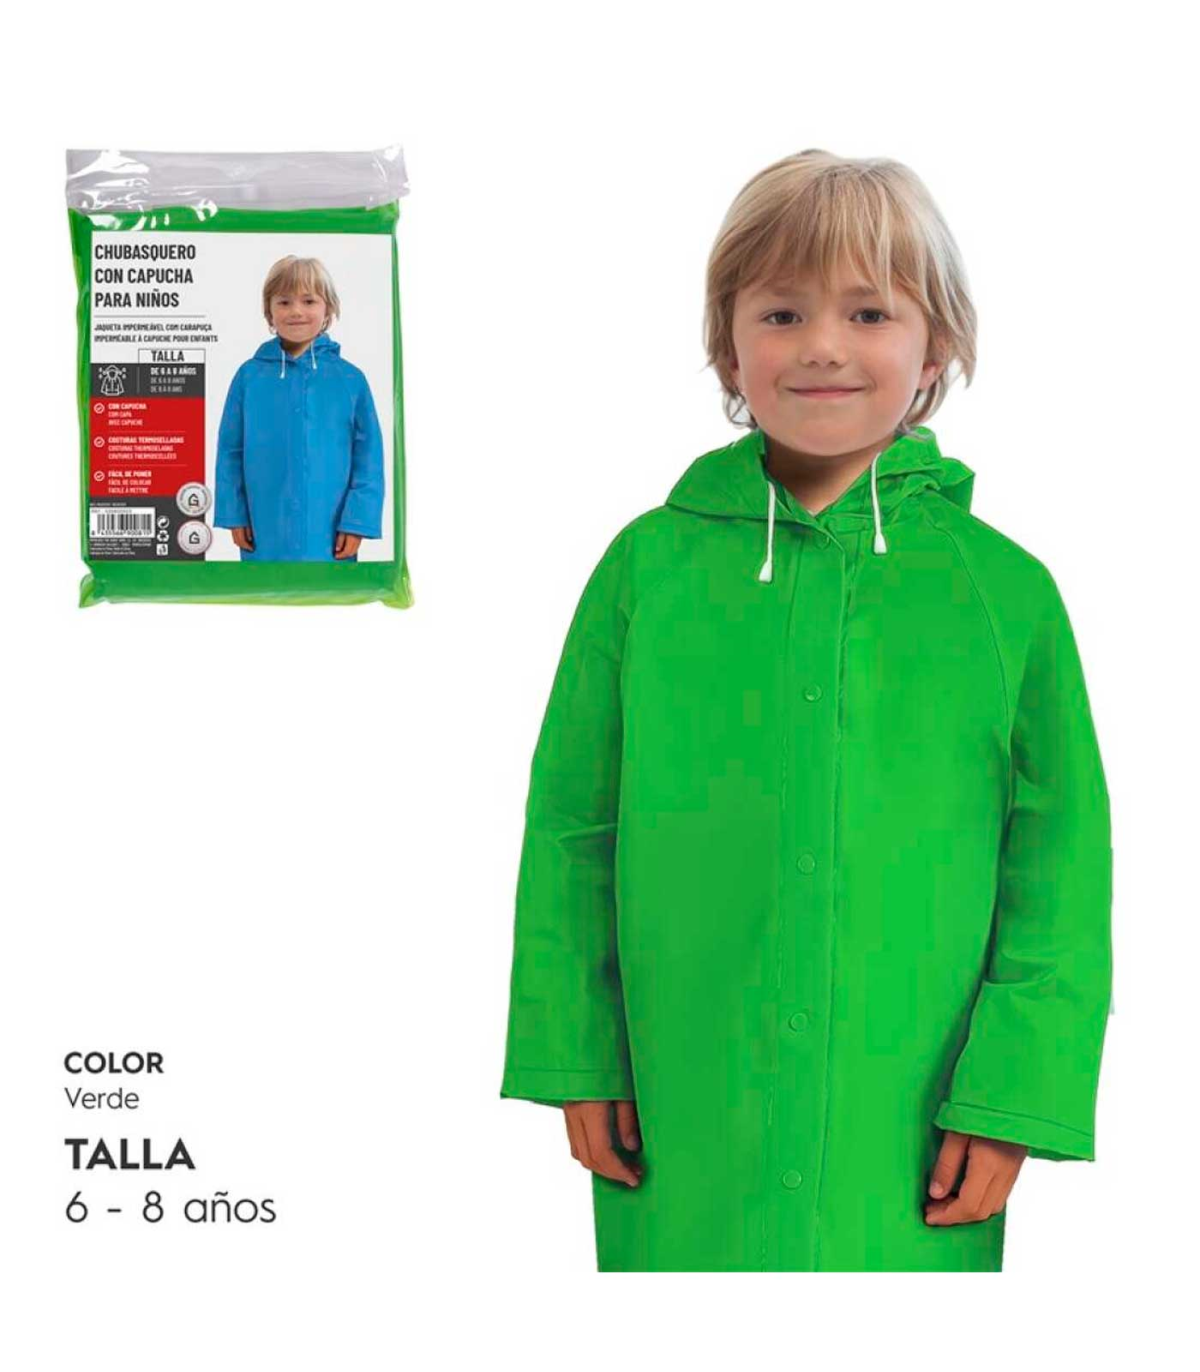 Tradineur - Chubasquero con capucha para niños - Fabricado al 100%  poliéster - Costura termoselladas - Talla para niños de 6 - 8